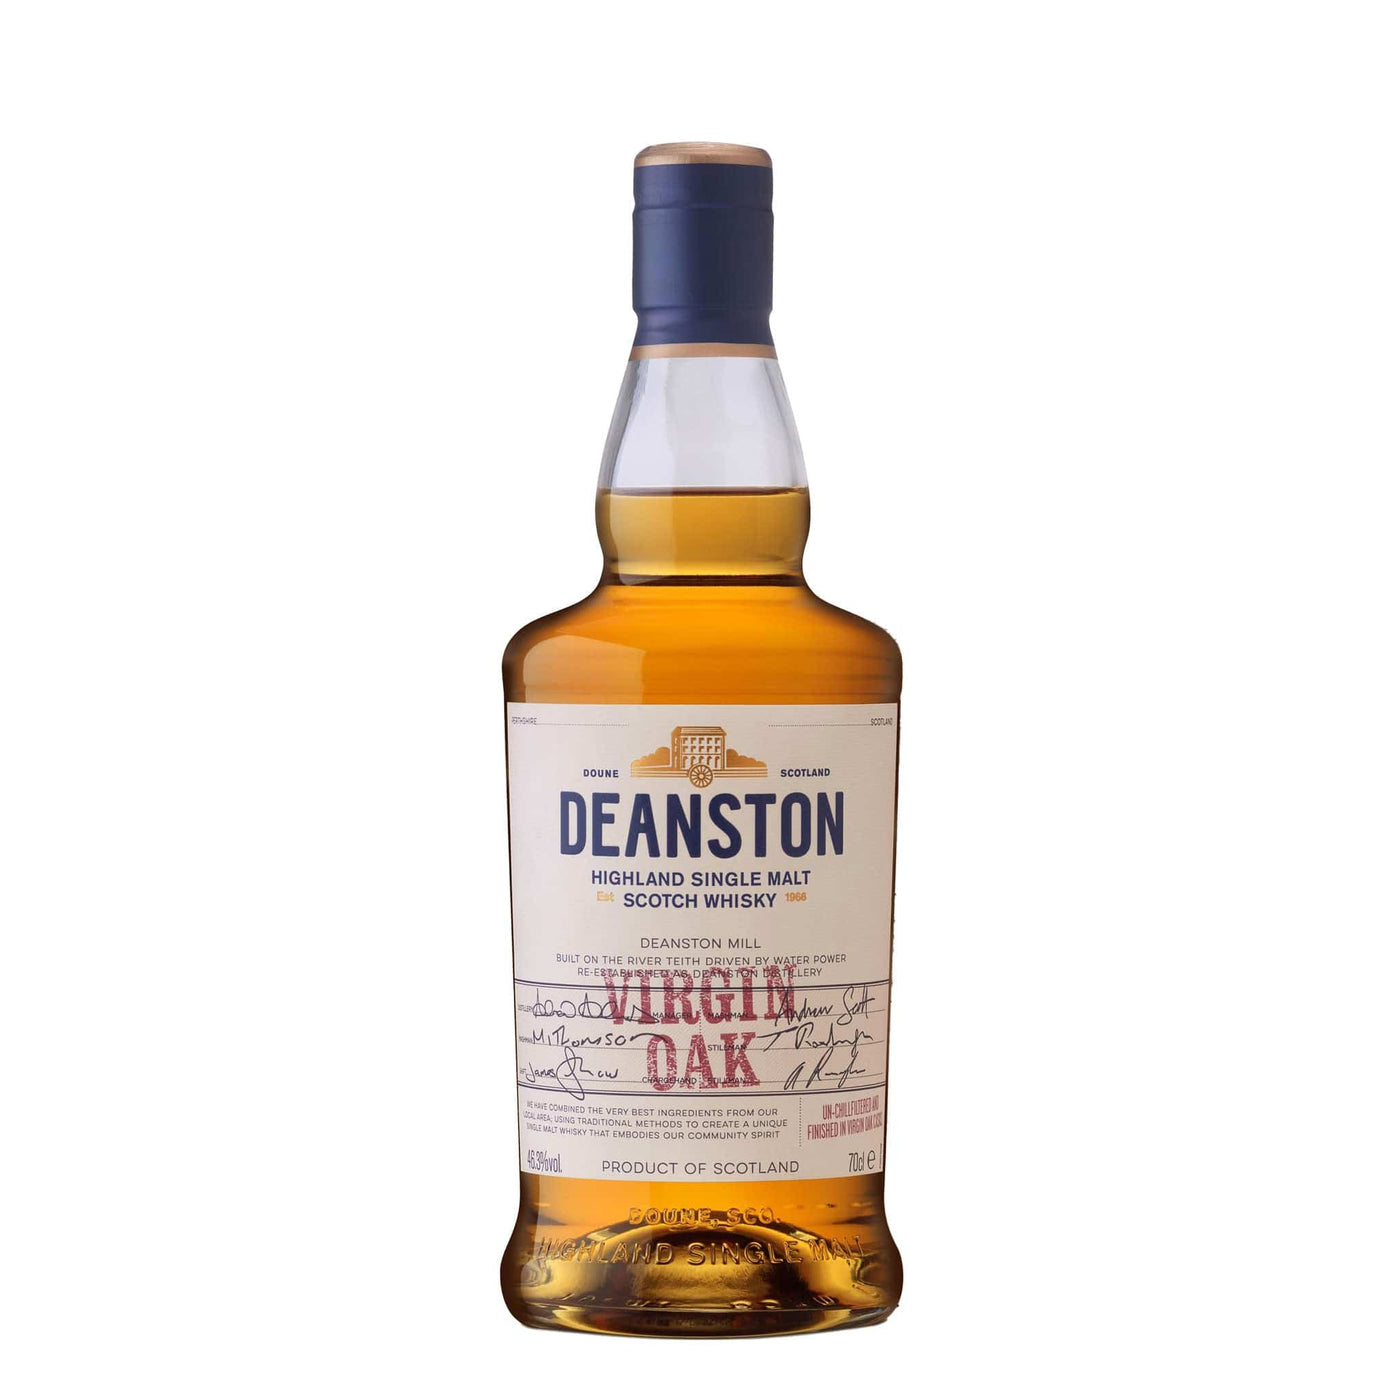 Deanston Virgin Oak Whisky - Spiritly